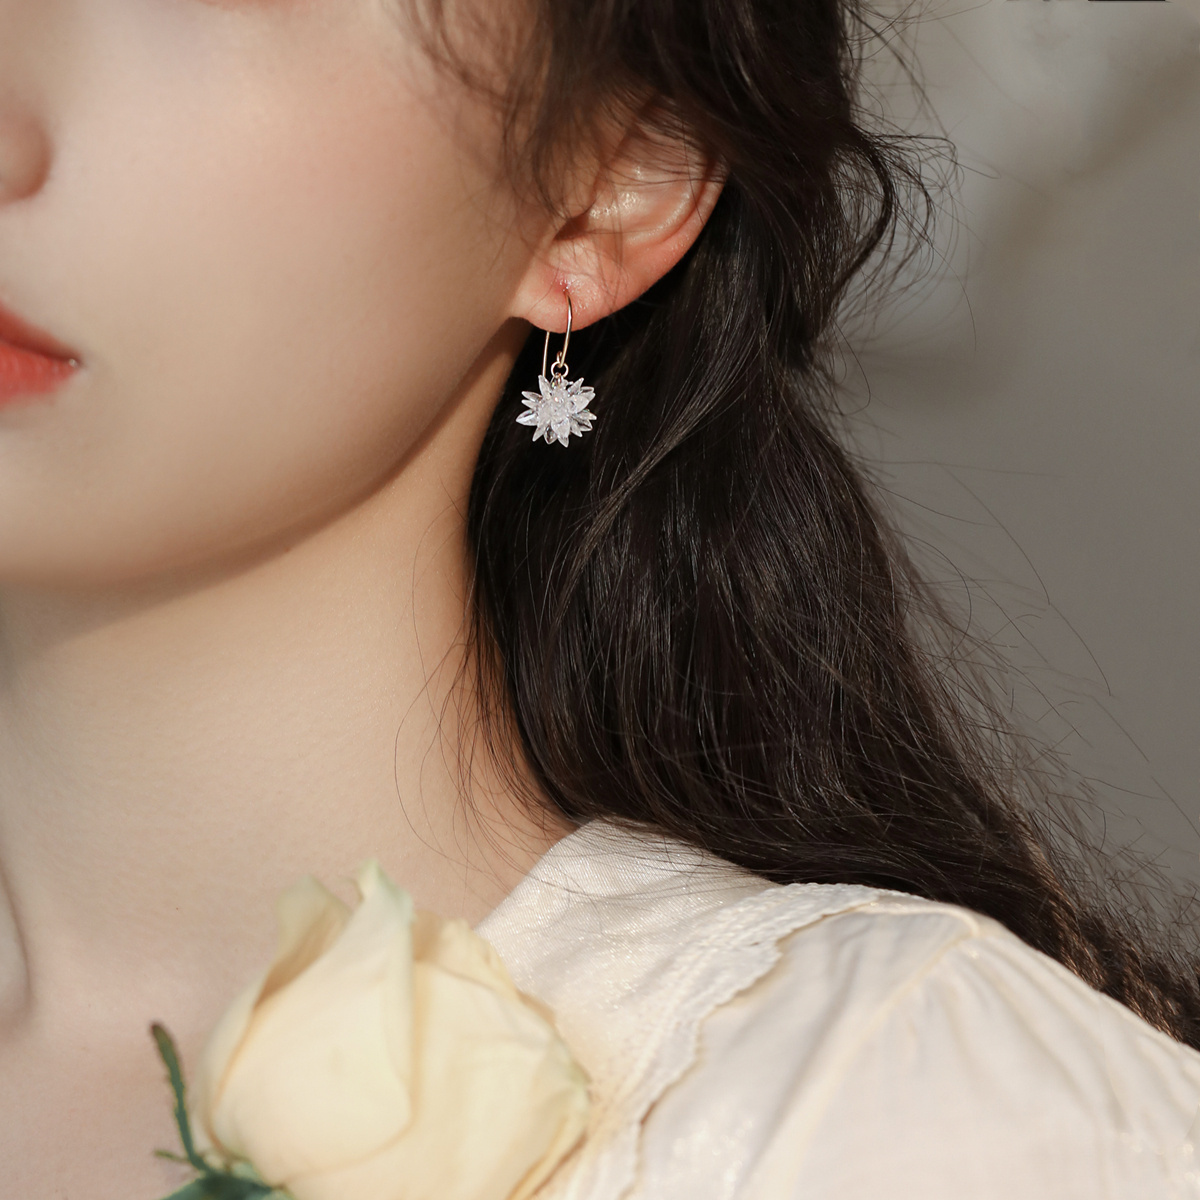 赛赛莉安古典仙女气质款式耳钩